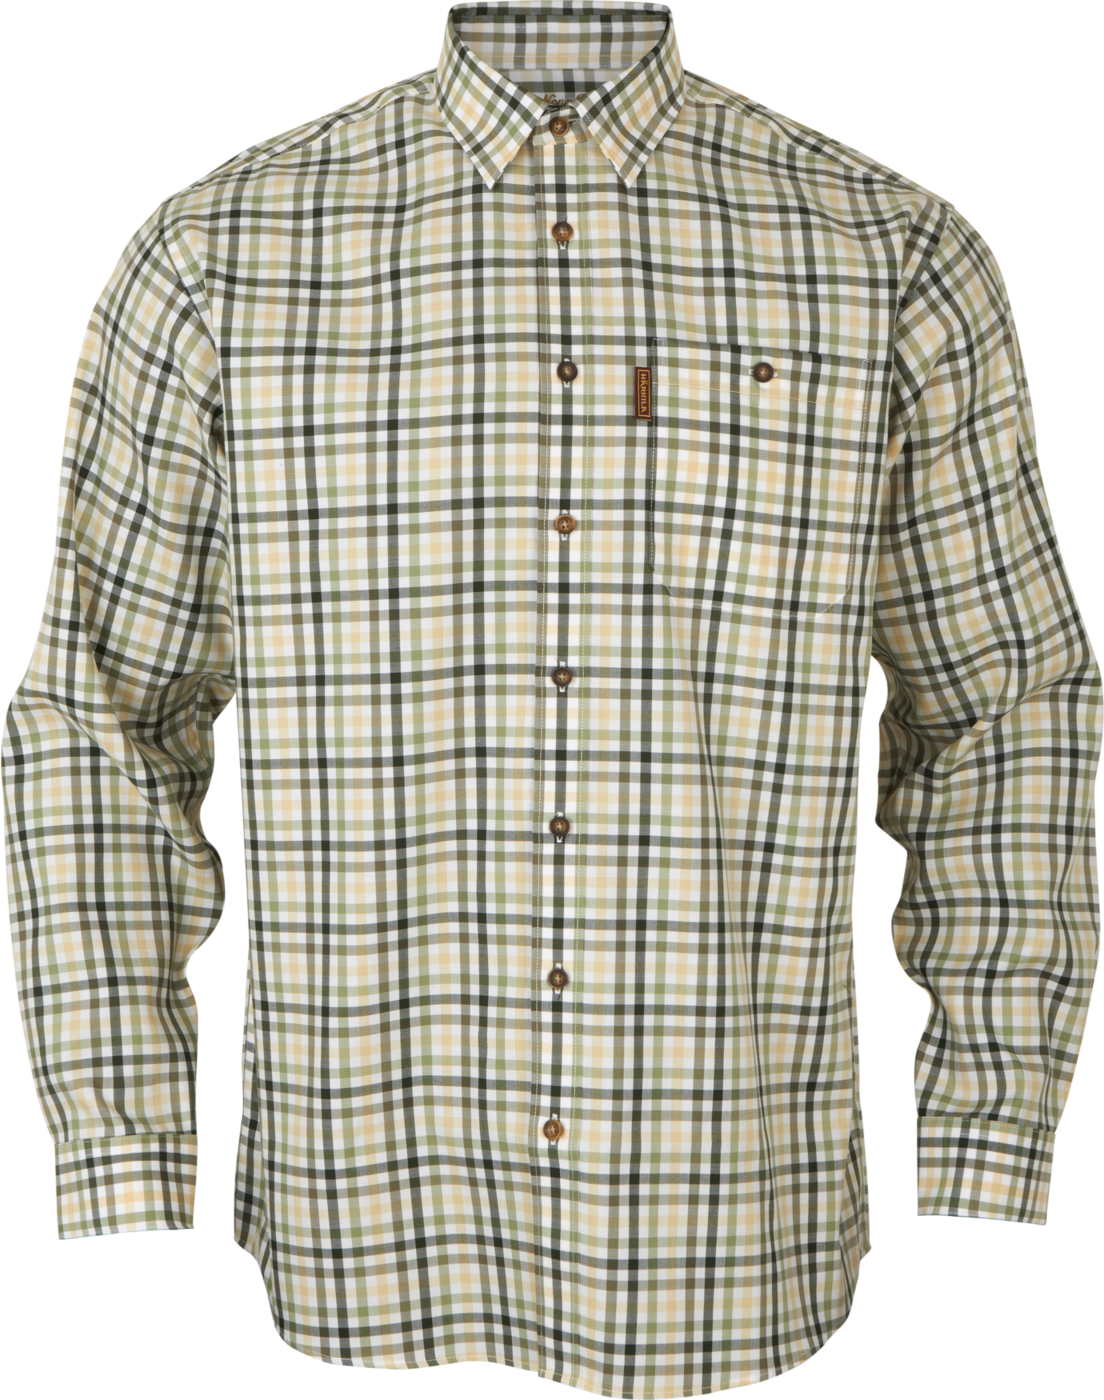 Men's Milford Shirt Beech green check